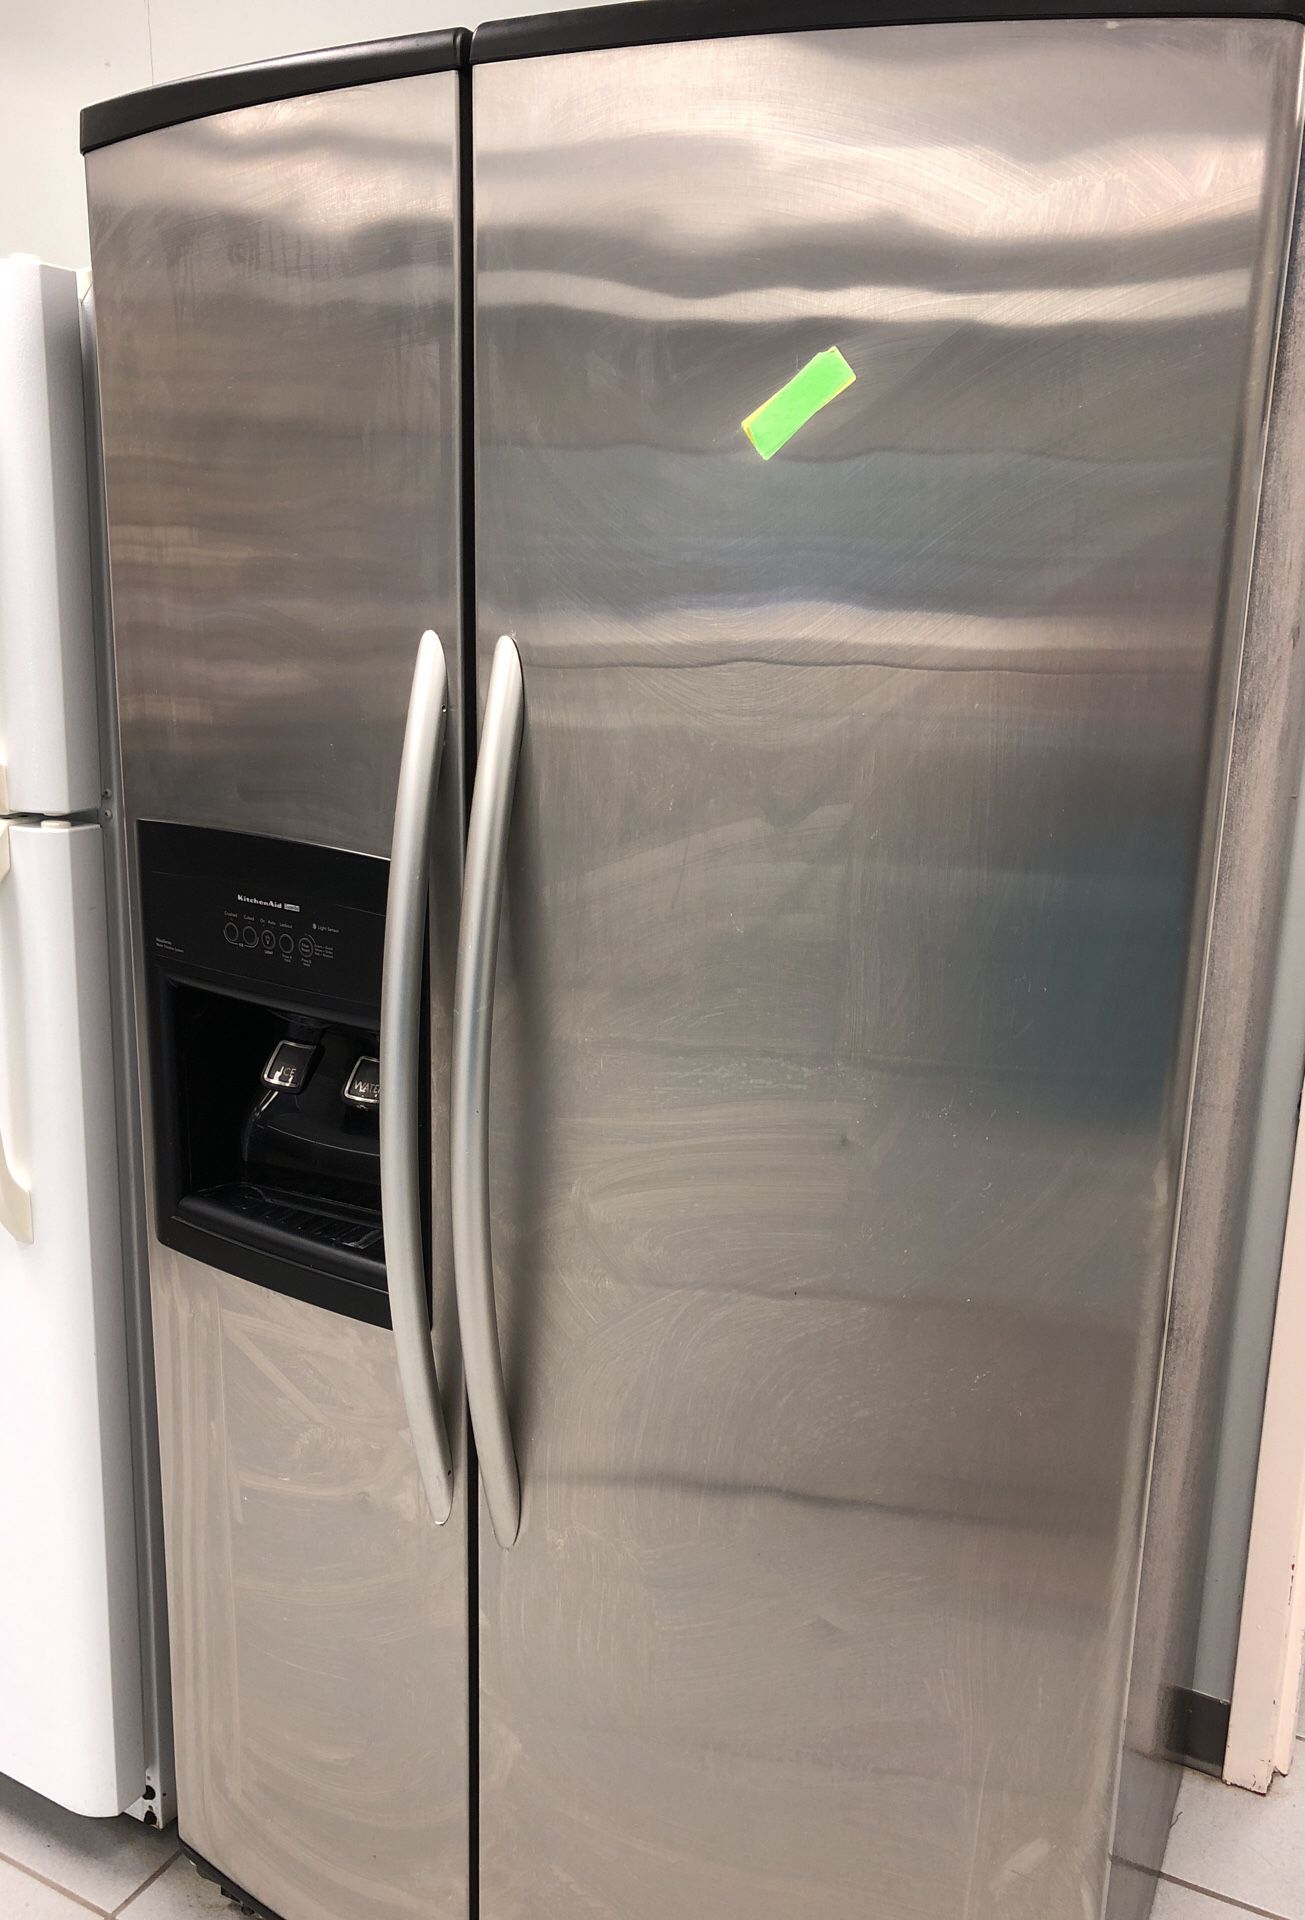 Kitchen aid refrigerator